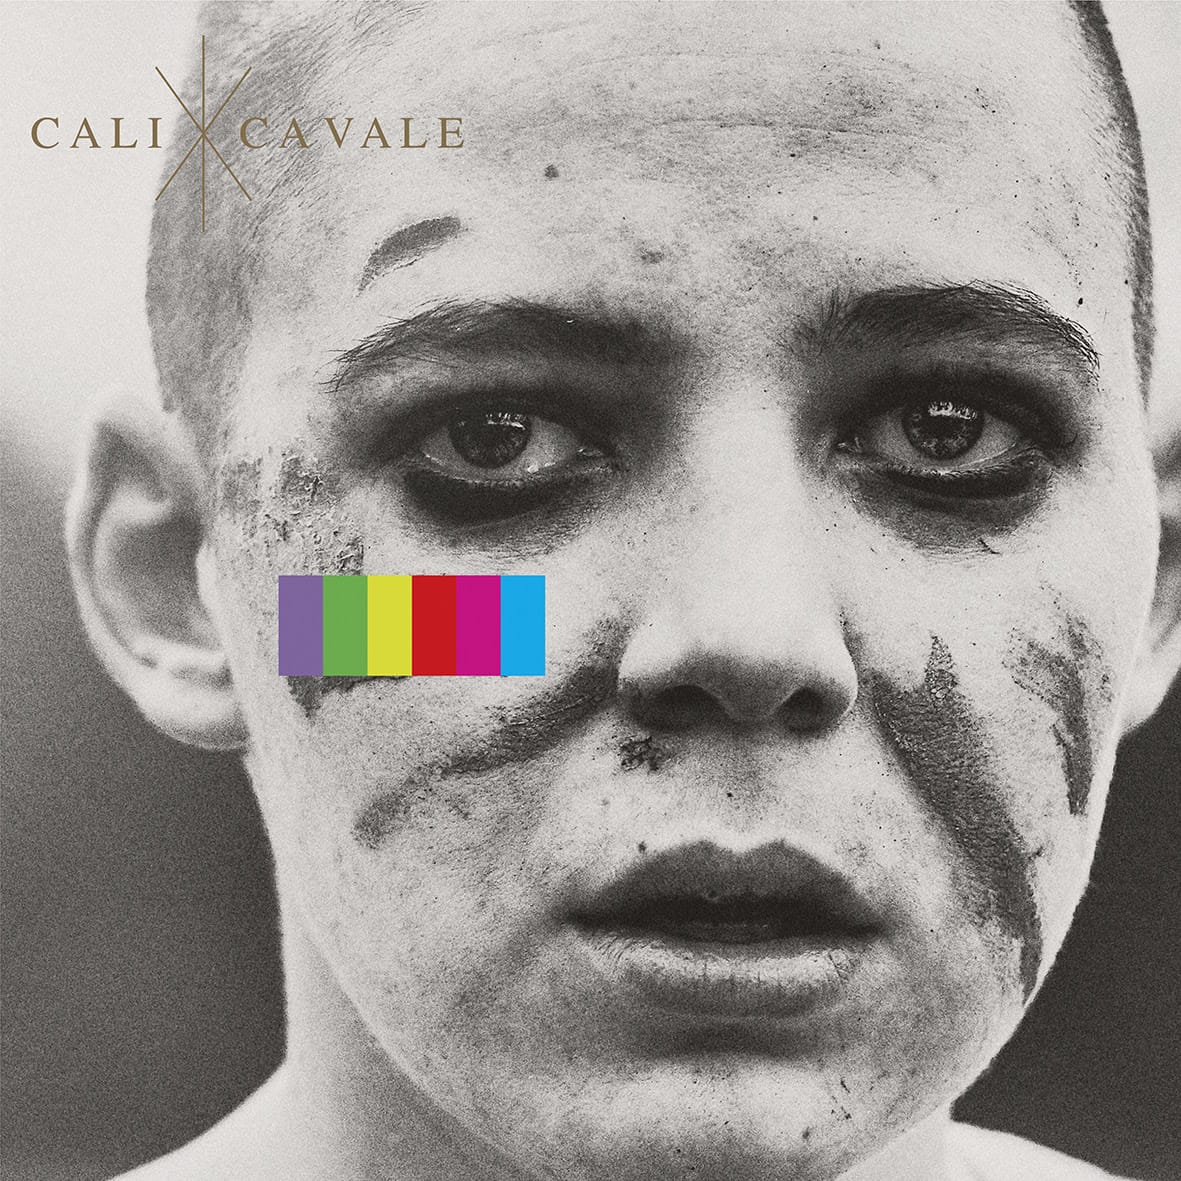 Cali image cover album Cavale musique